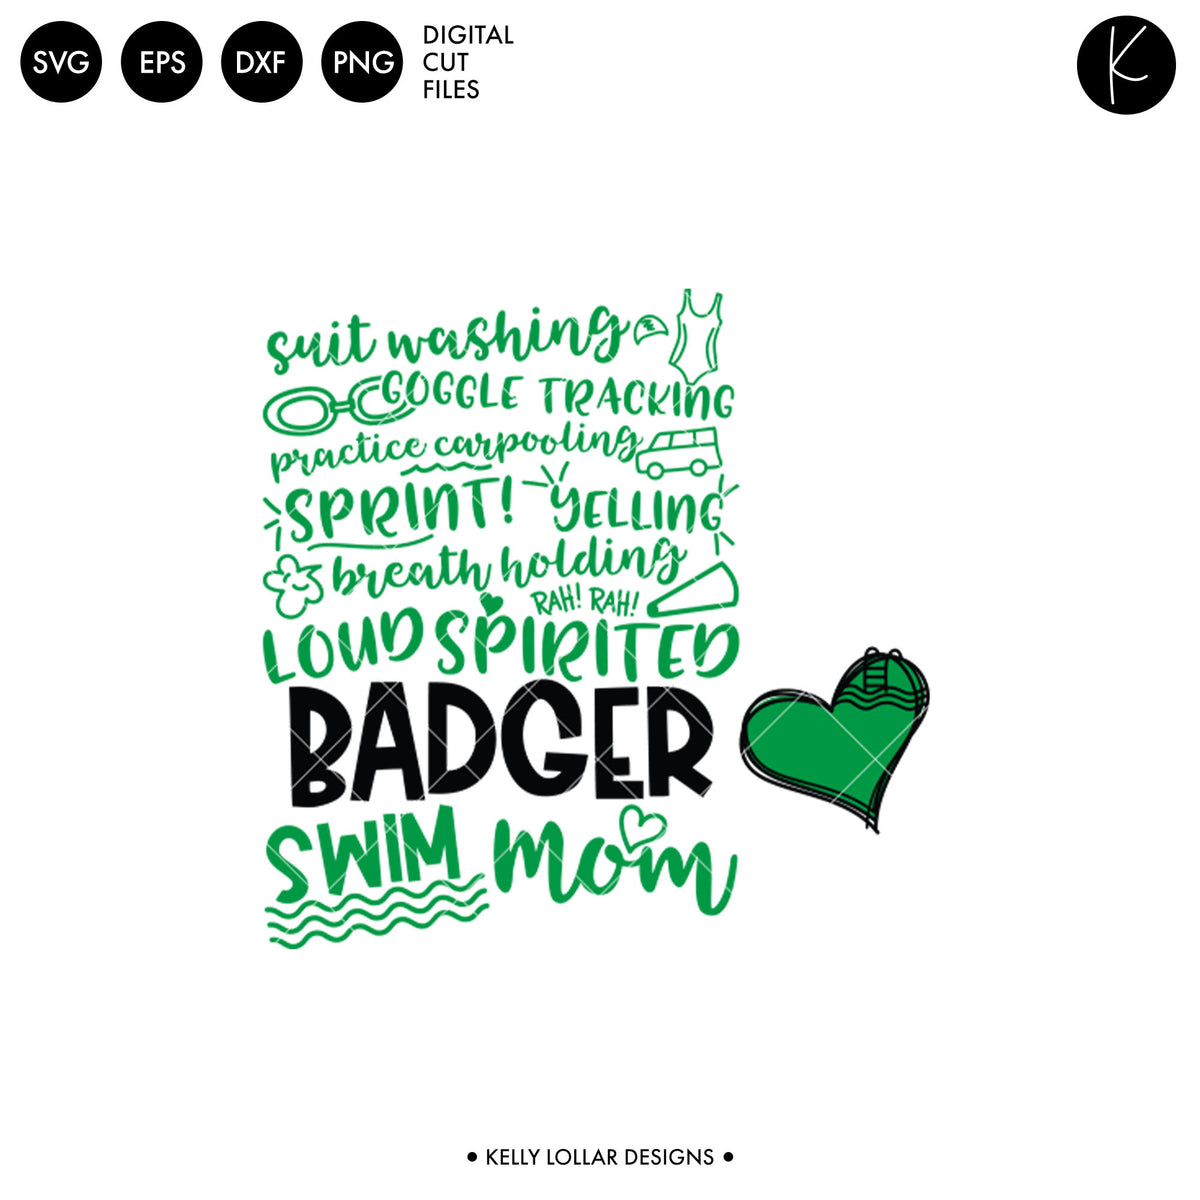 Badgers Swim Bundle | SVG DXF EPS PNG Cut Files